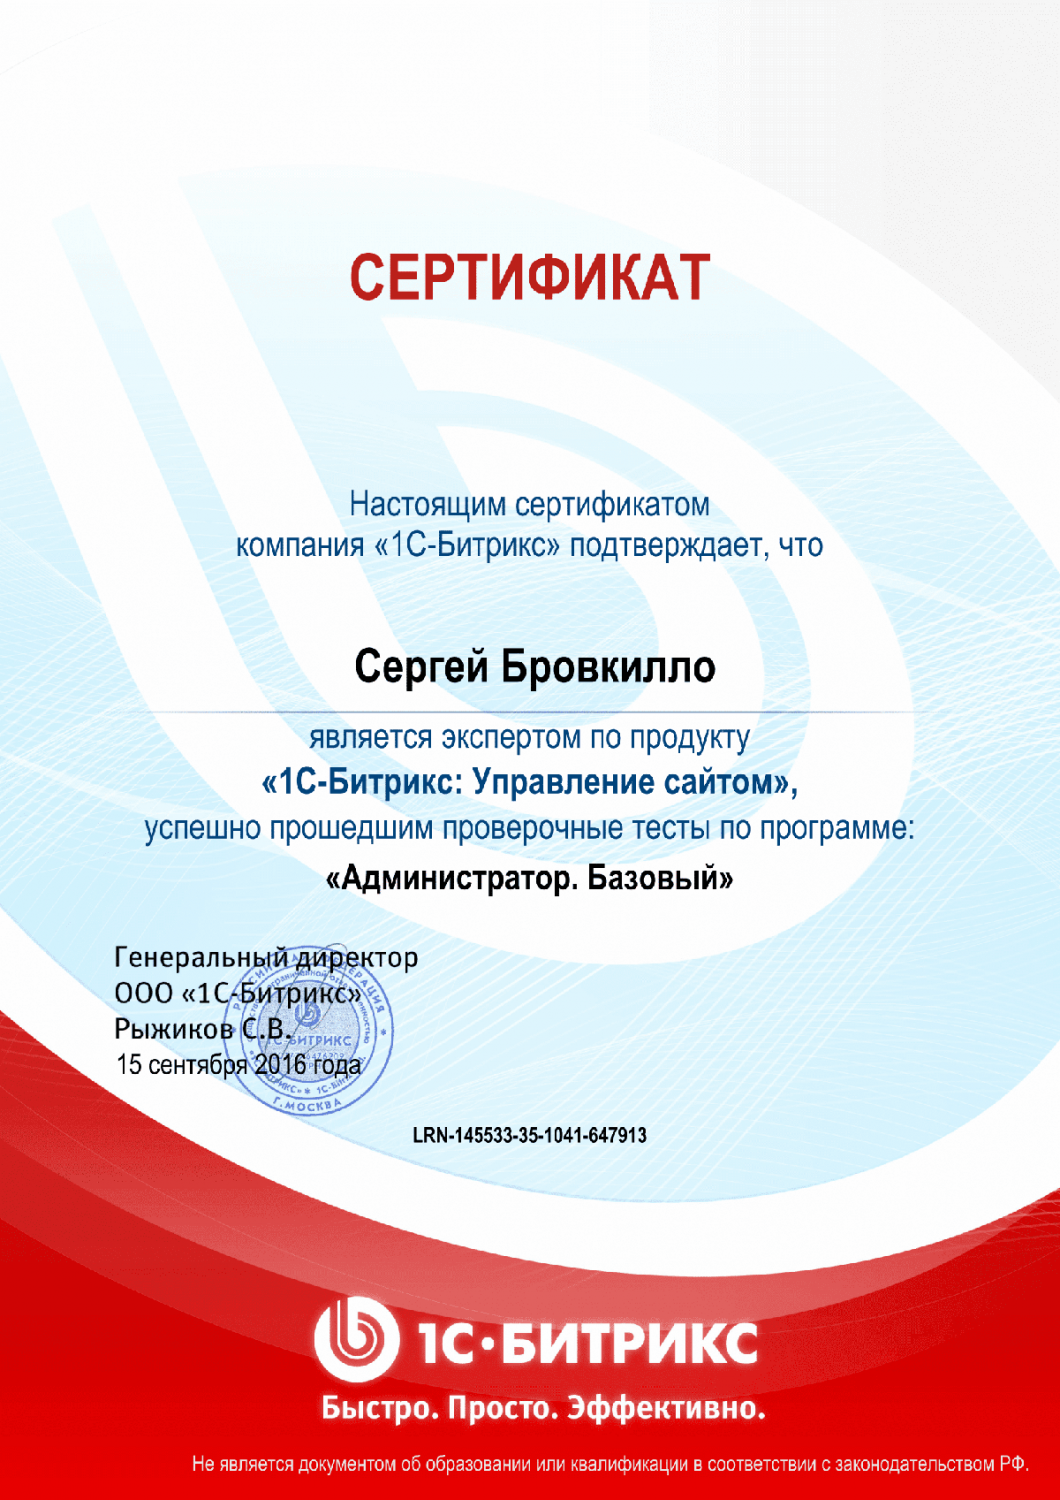 Сертификат эксперта по программе "Администратор. Базовый" в Санкт-Петербурга